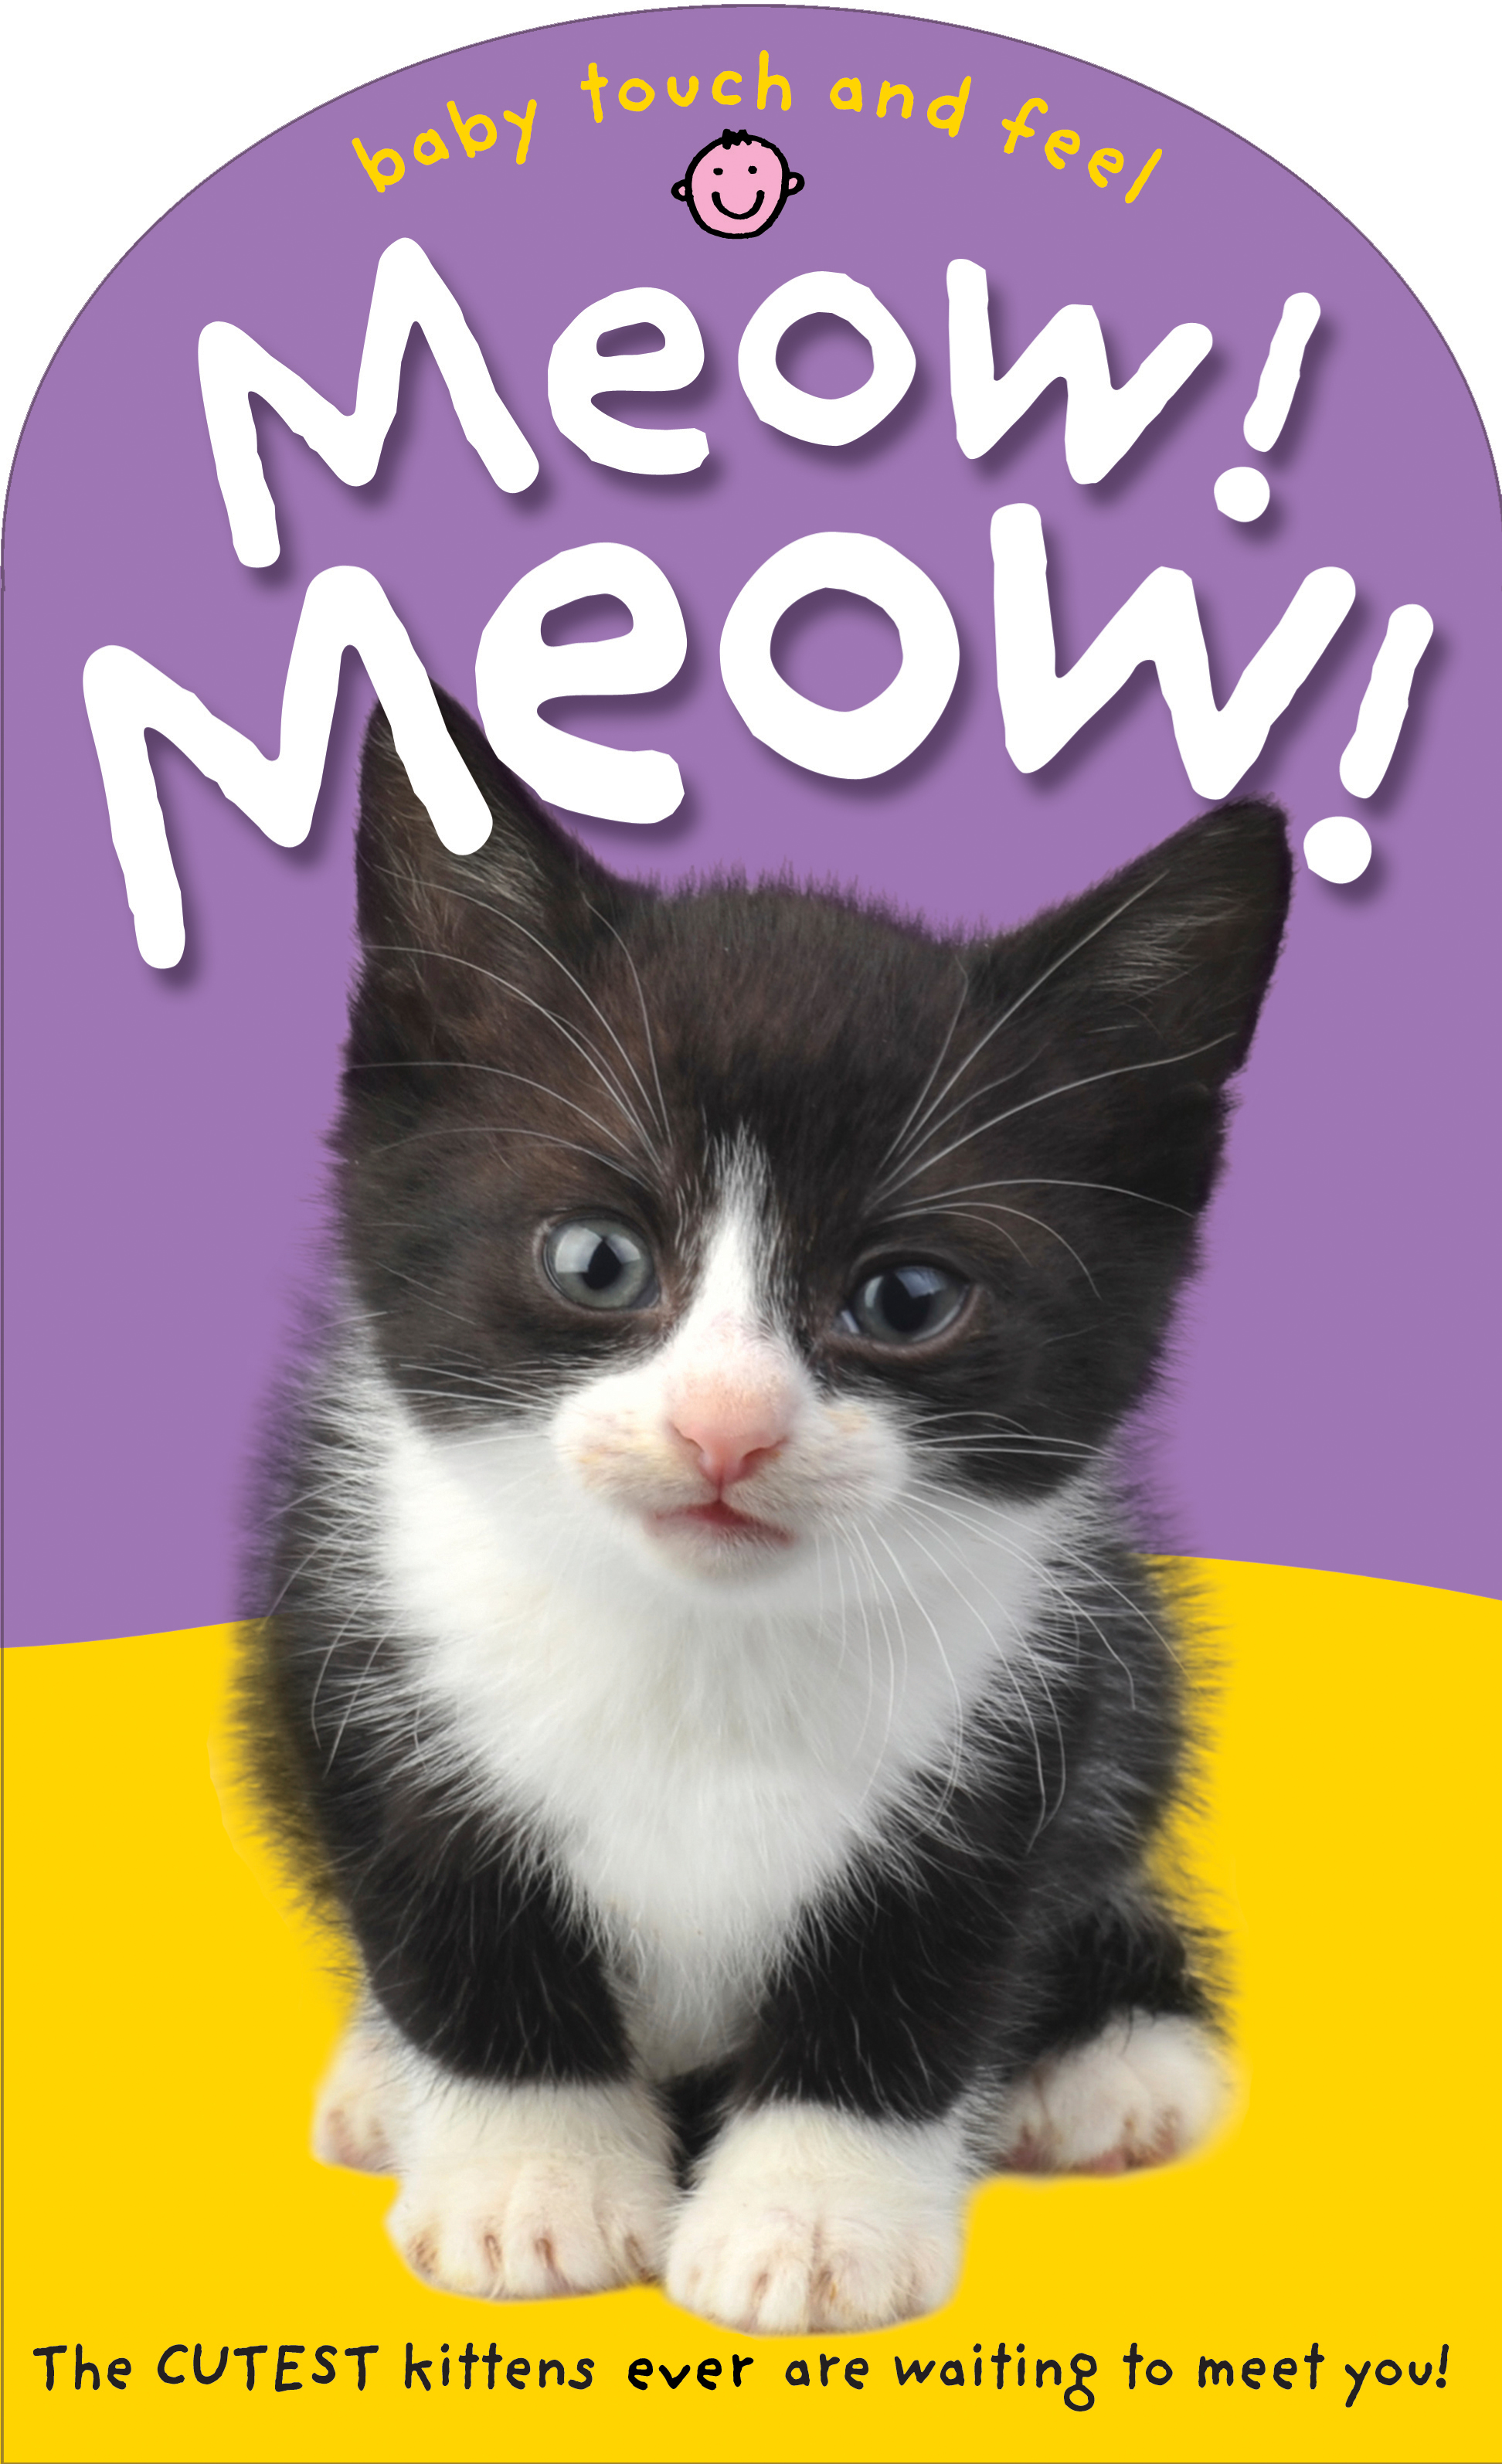 Meow! Meow!